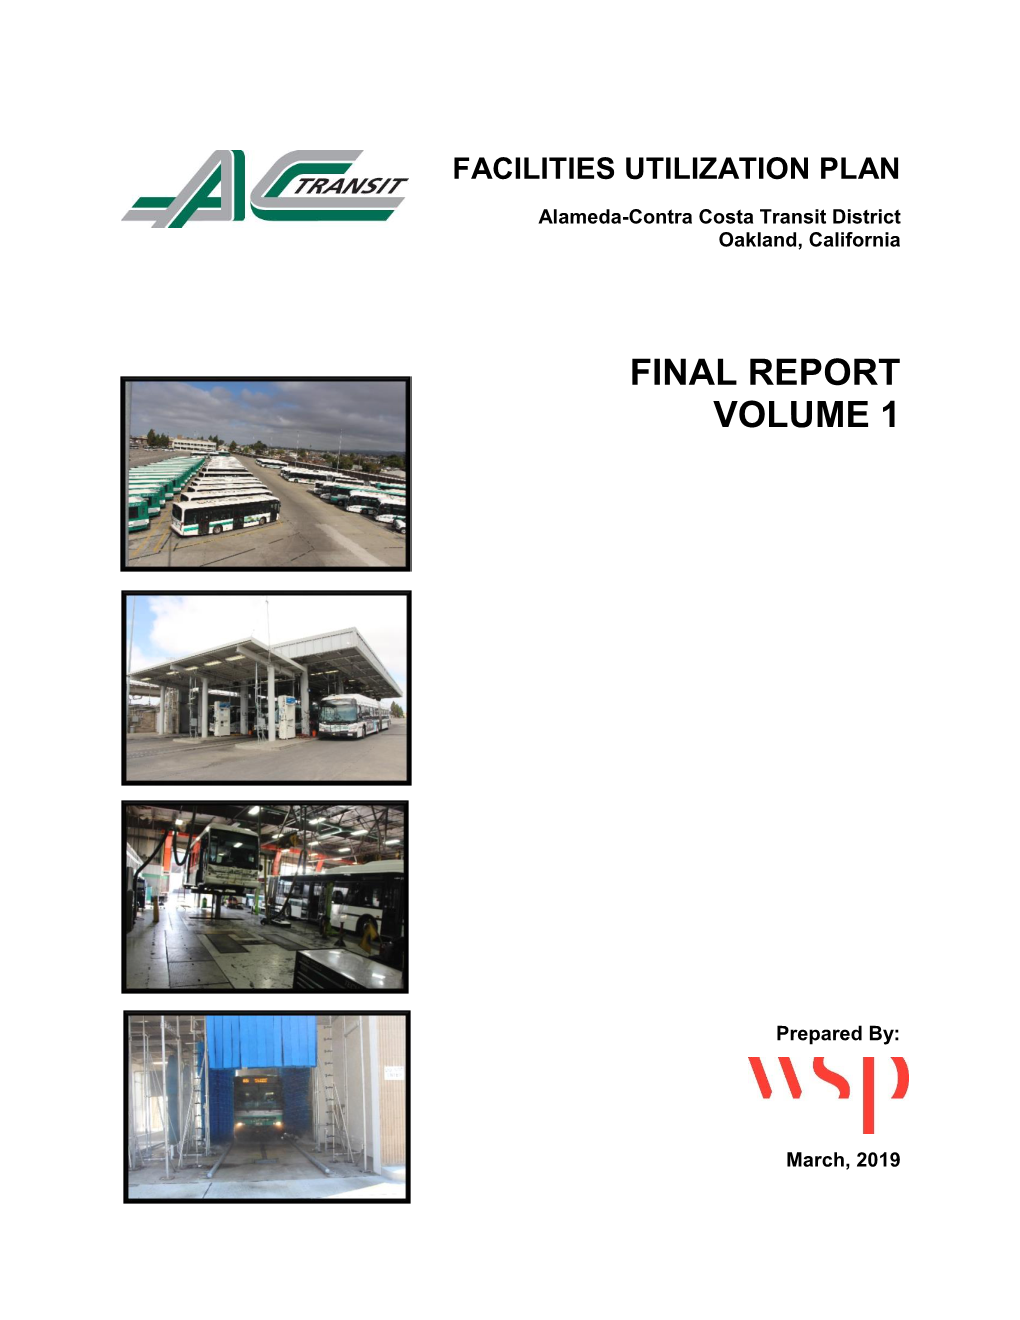 Facilities Utilization Plan